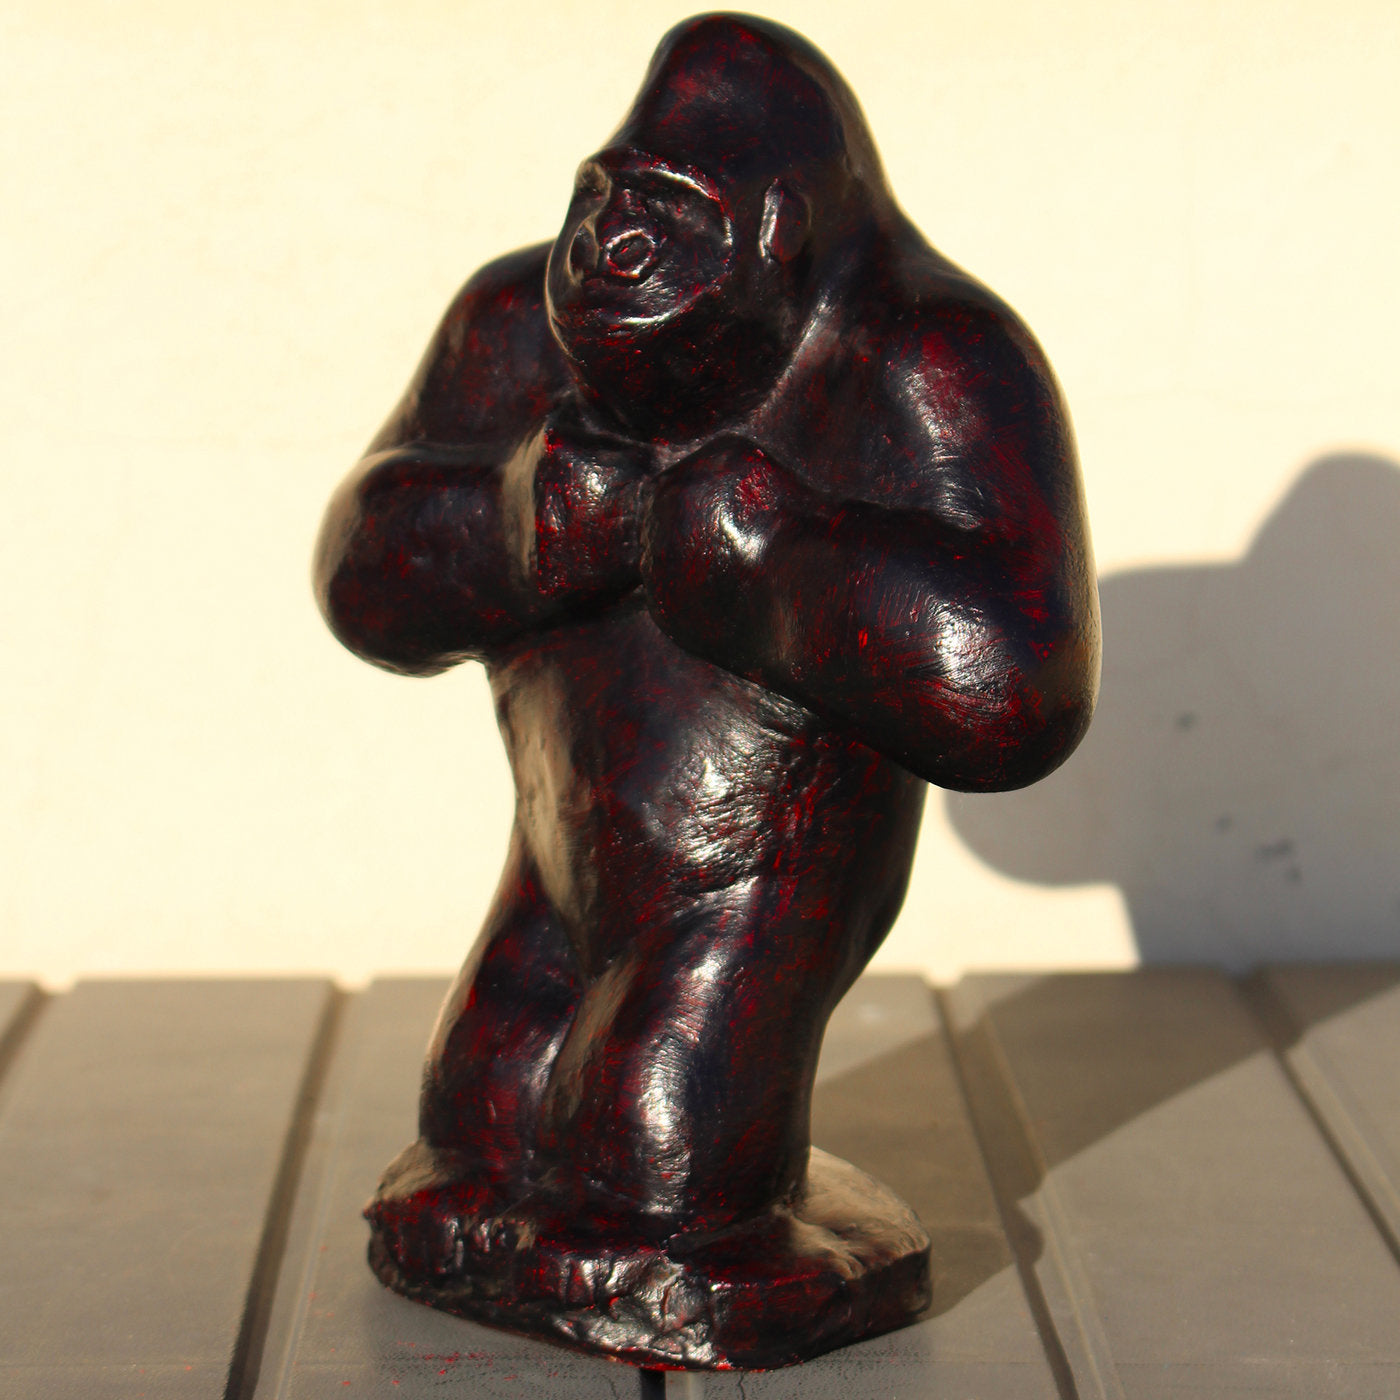 Ebony-Colored Gorilla Sculpture - Alternative view 2